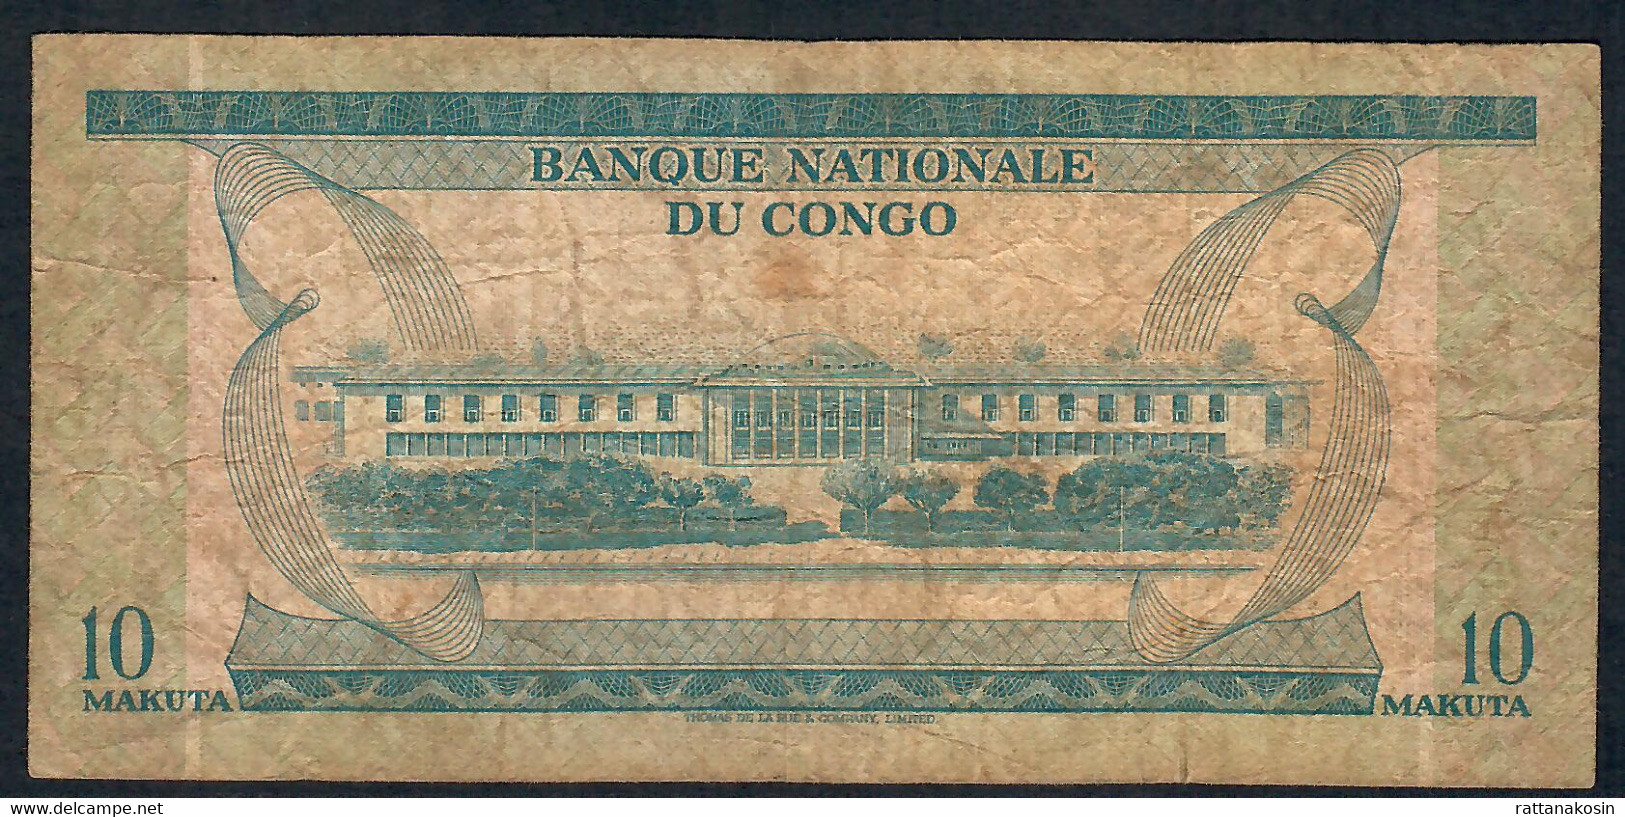 CONGO  P9a  10  MAKUTA    1967   DOUBLE LETTER PREFIX  VF NO P.h. - Republic Of Congo (Congo-Brazzaville)